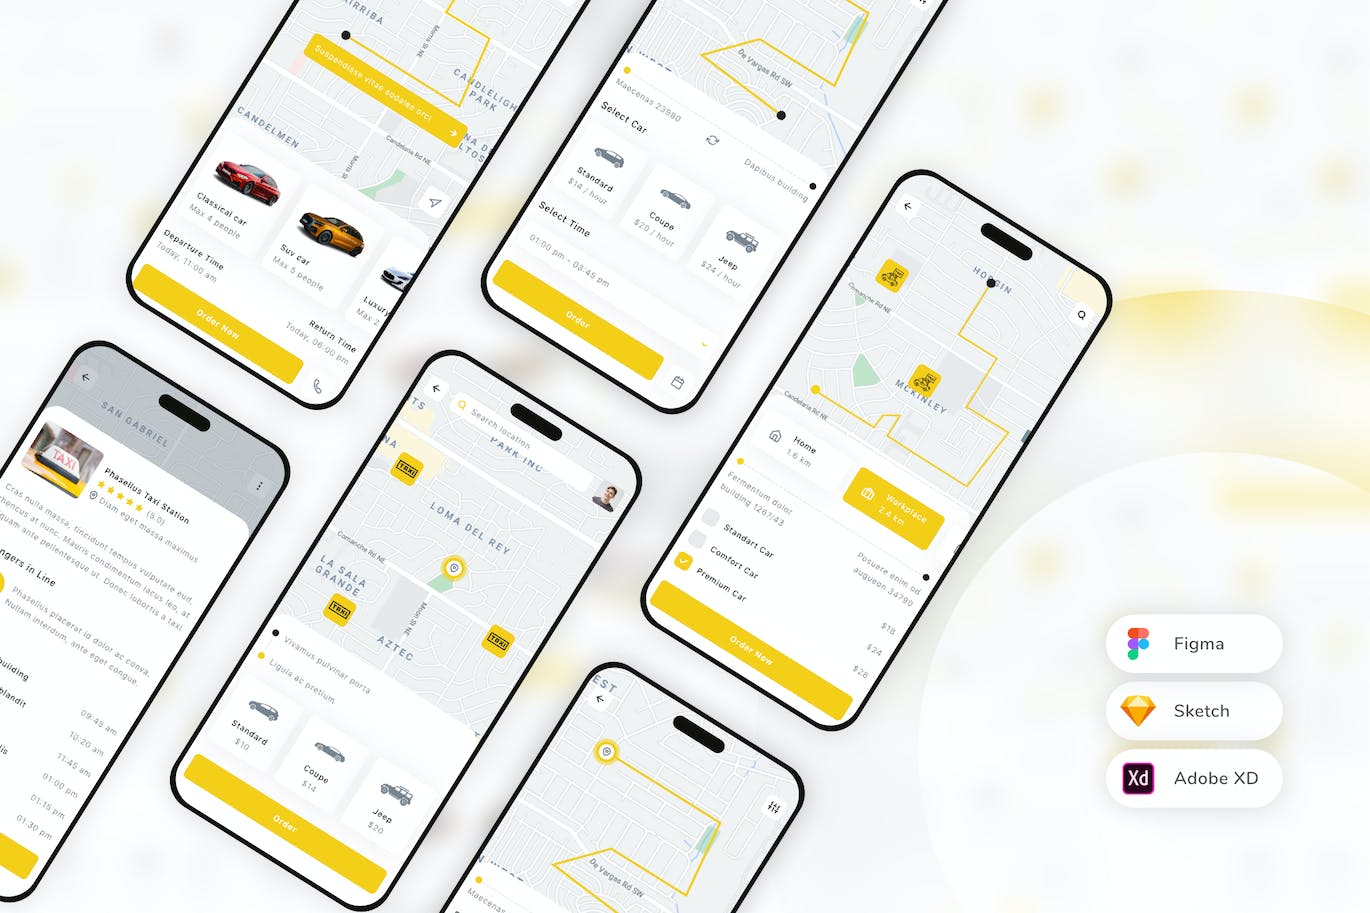 出租车预订移动应用App UI Kit (SKETCH,FIG,XD)